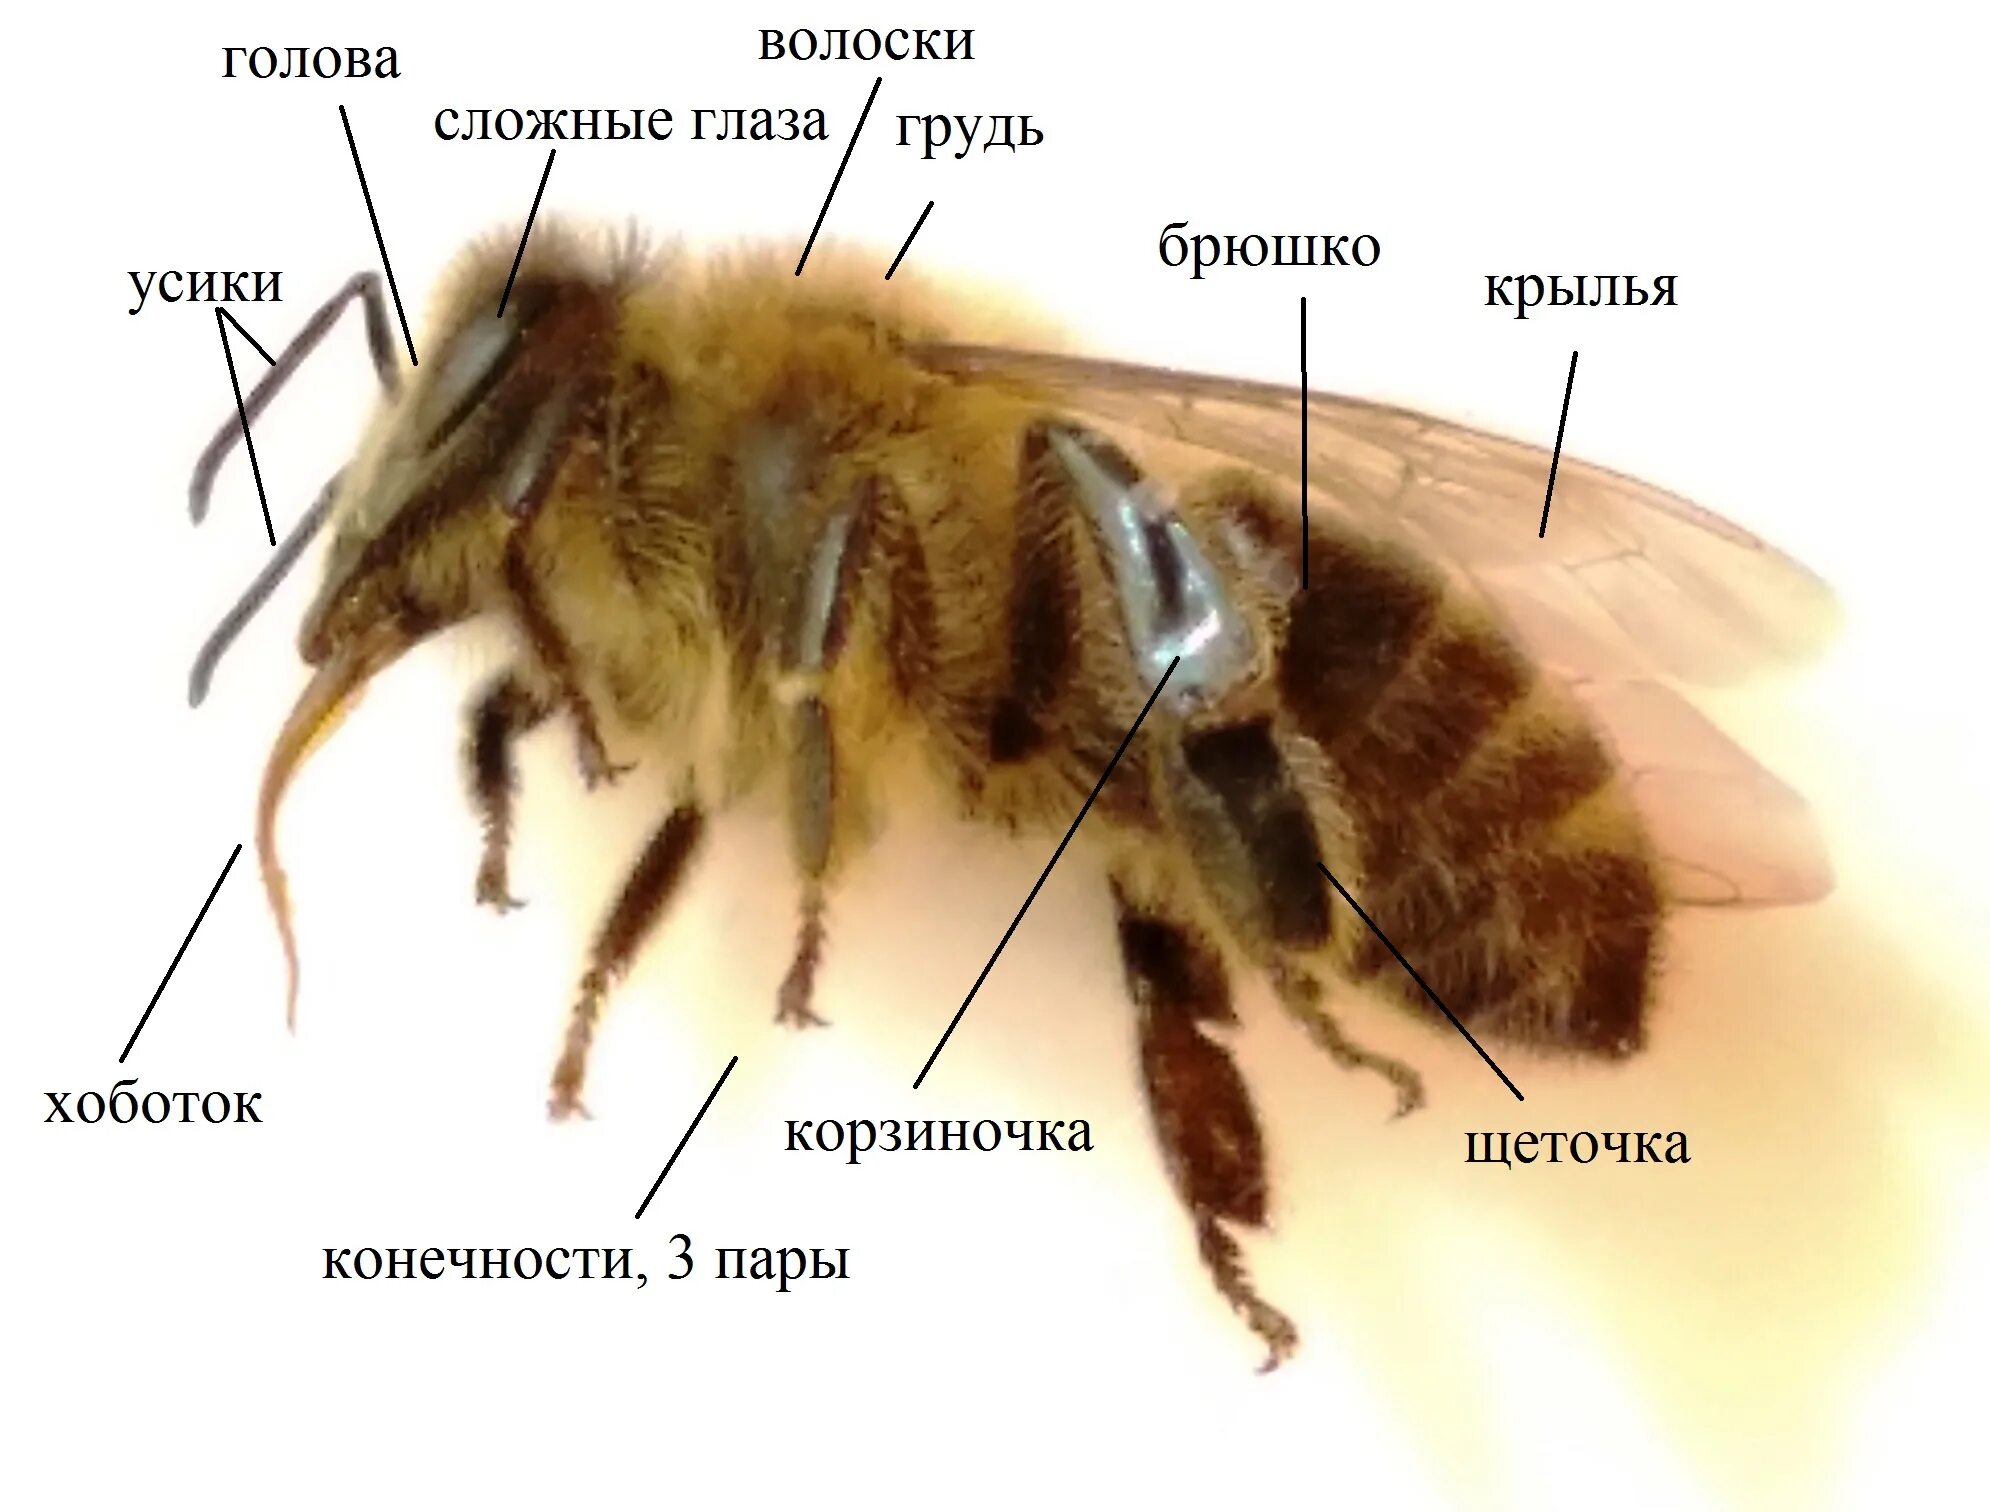 Окраска тела пчелы. Анатомия пчелы медоносной. Строение пчелы медоносной. Внешнее строение пчелы. Строение тела пчелы медоносной.